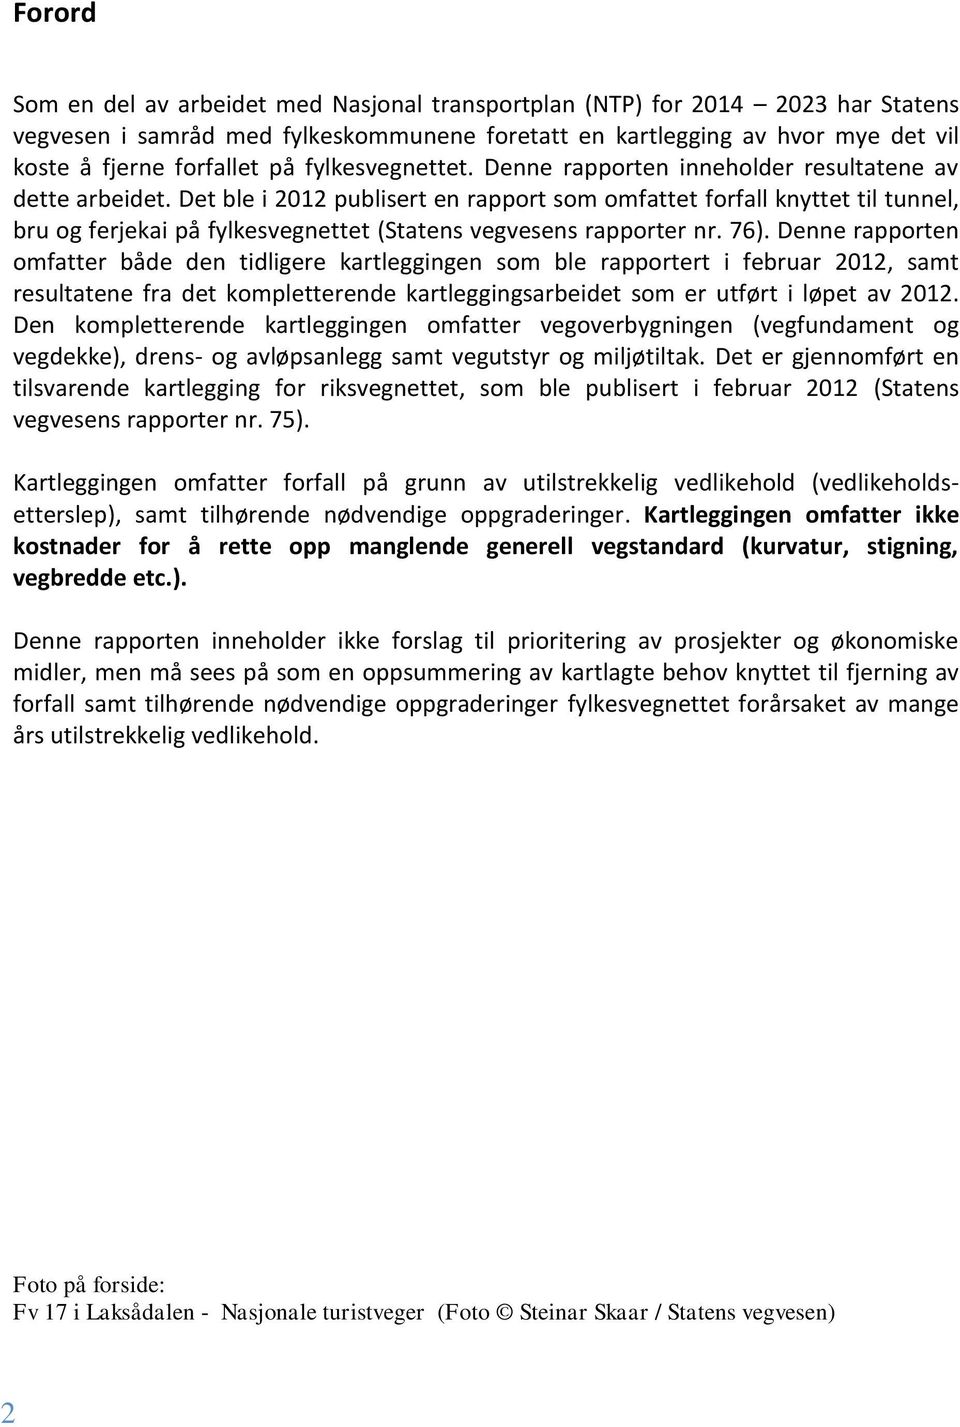 Det ble i 2012 publisert en rapport som omfattet forfall knyttet til tunnel, bru og ferjekai på fylkesvegnettet (Statens vegvesens rapporter nr. 76).